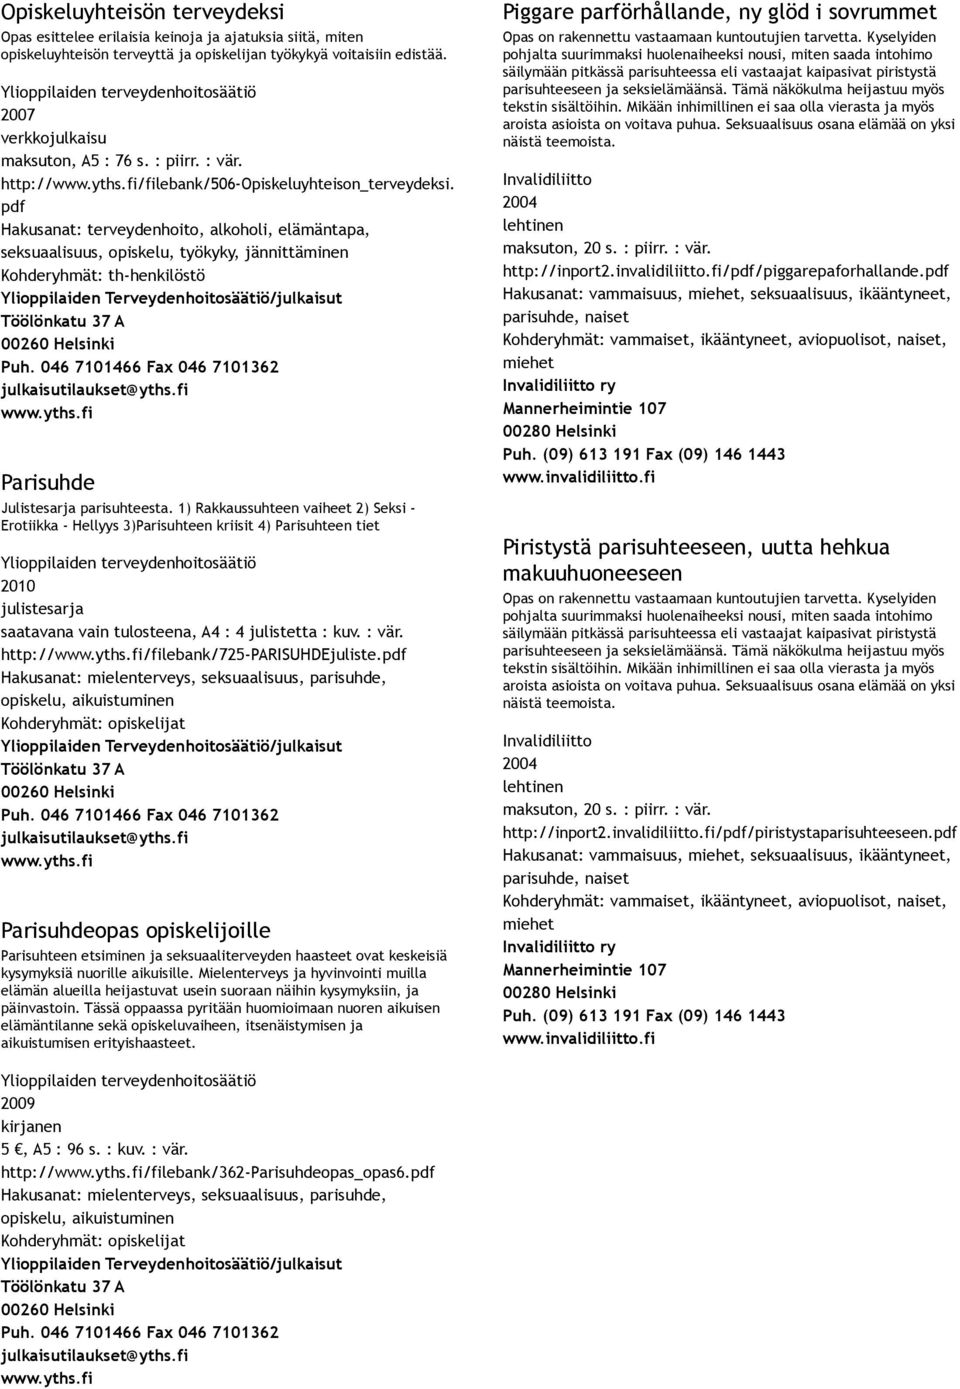 Hakusanat: terveydenhoito, alkoholi, elämäntapa, seksuaalisuus, opiskelu, työkyky, jännittäminen Kohderyhmät: th henkilöstö Ylioppilaiden Terveydenhoitosäätiö/julkaisut Töölönkatu 37 A 00260 Helsinki